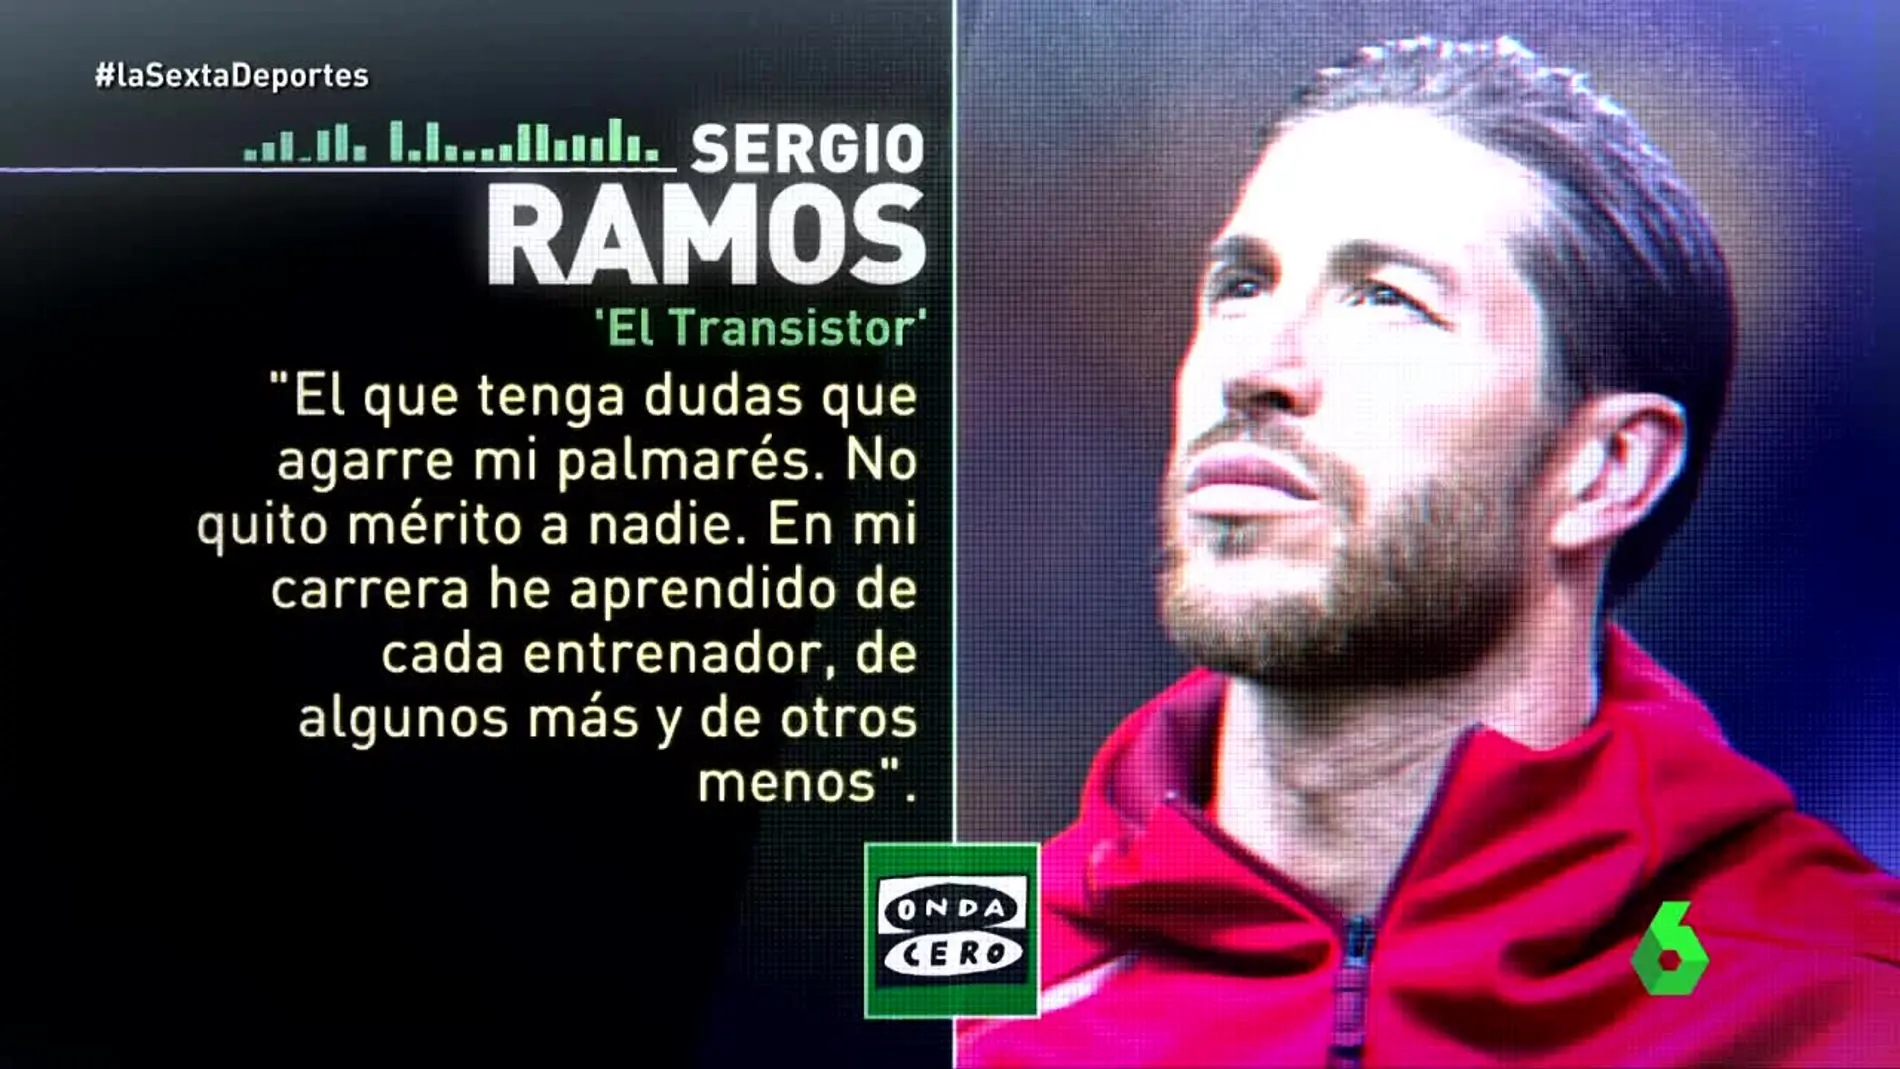 Sergio Ramos, central del Real Madrid